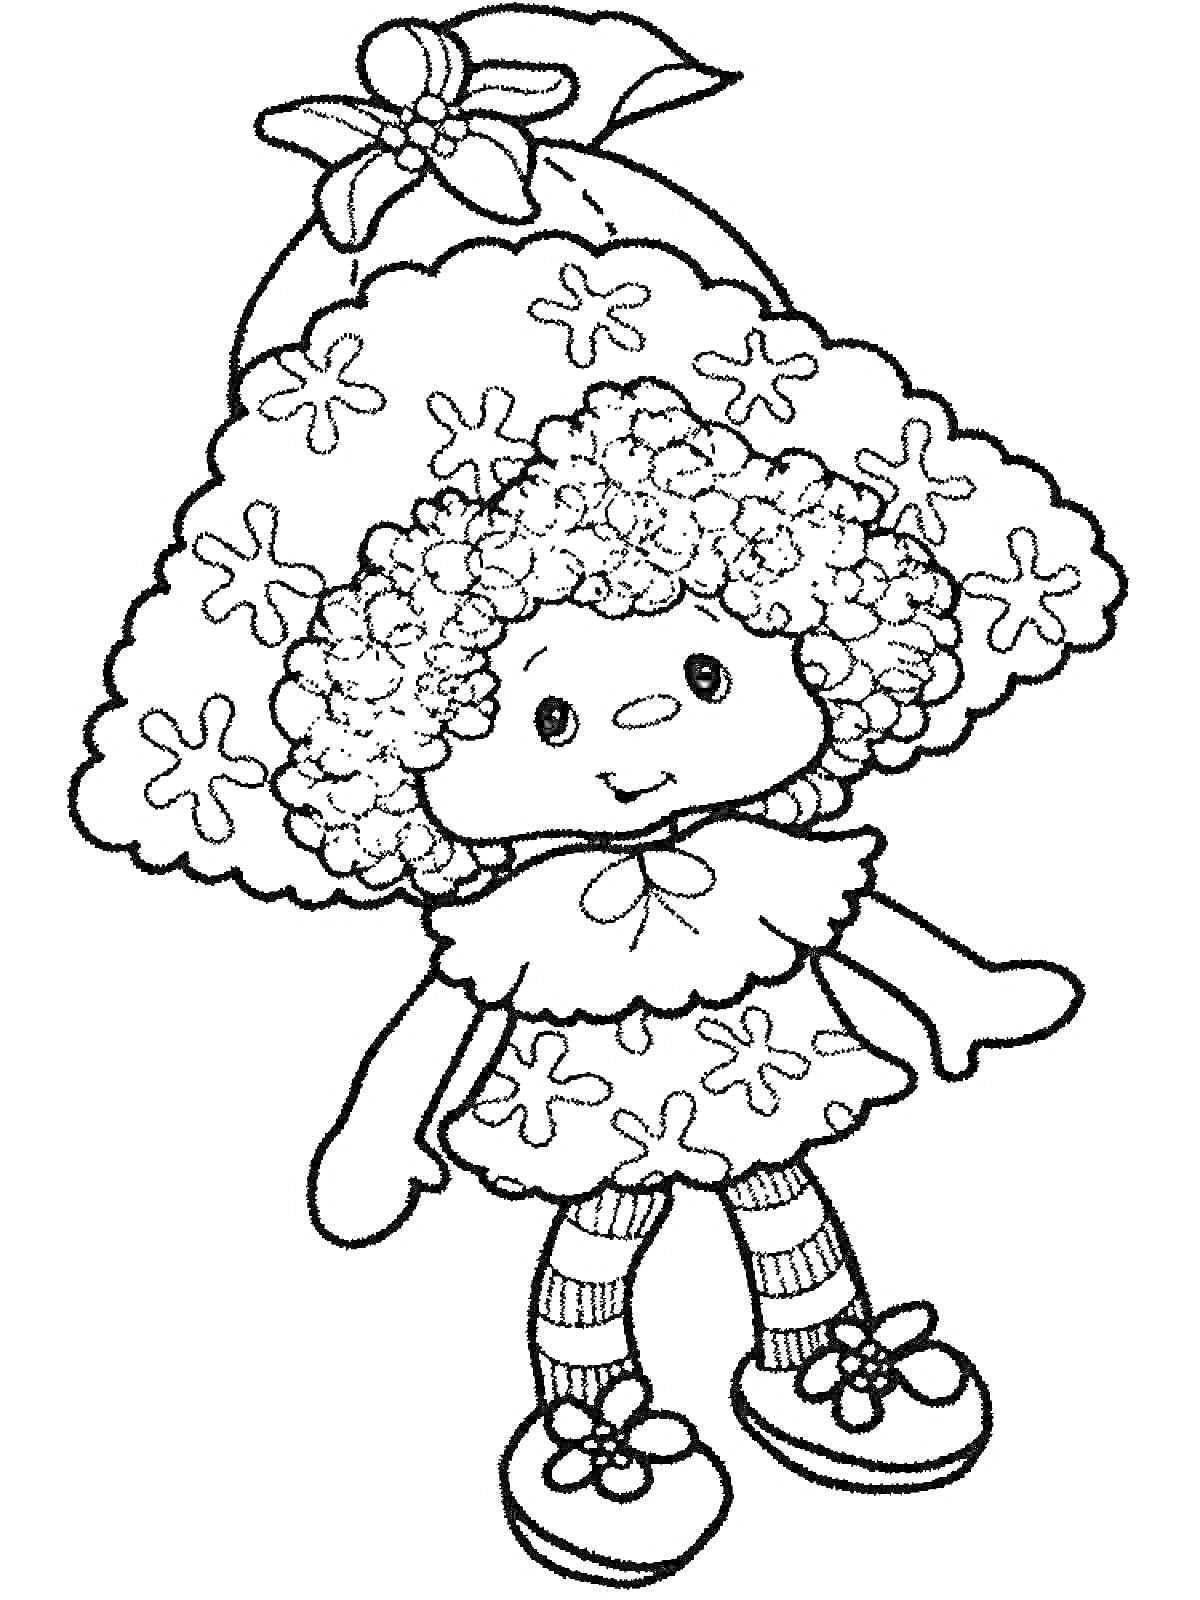 Кукла в шляпе с бантиком, в платье с цветочным узором, с кудрявыми волосами, в колготках с полосками и туфельках с цветами